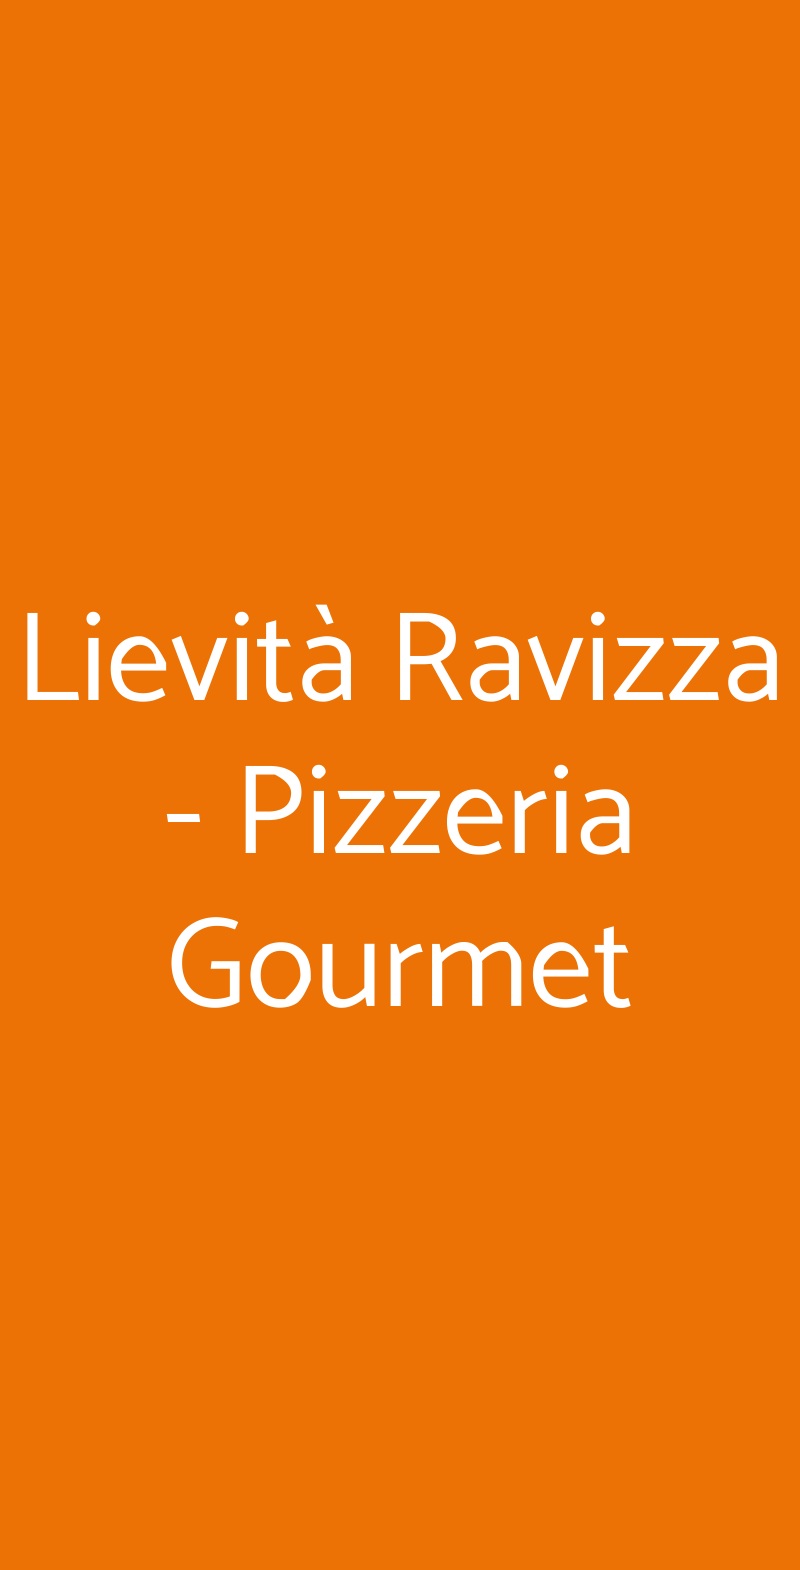 Lievità Ravizza - Pizzeria Gourmet Milano menù 1 pagina